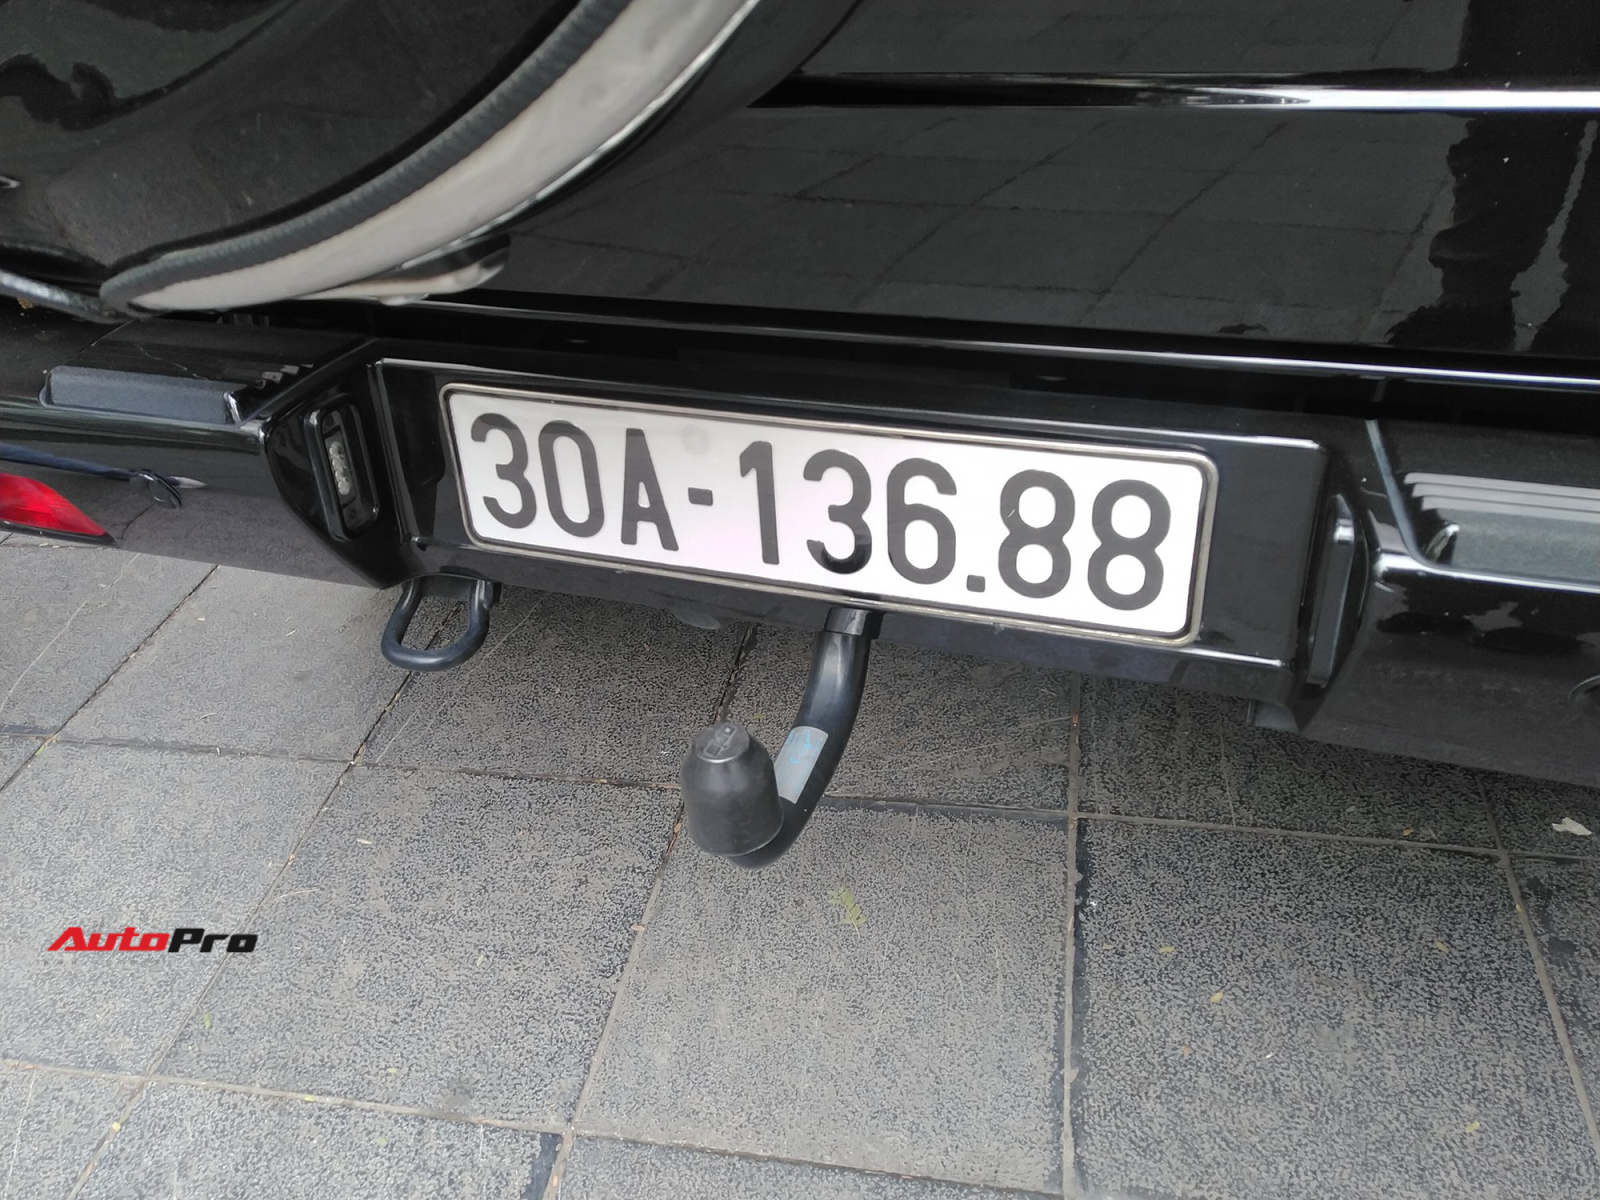 Mercedes-AMG G63 biển "sinh tài lộc phát" của đại gia Hà Nội - 1